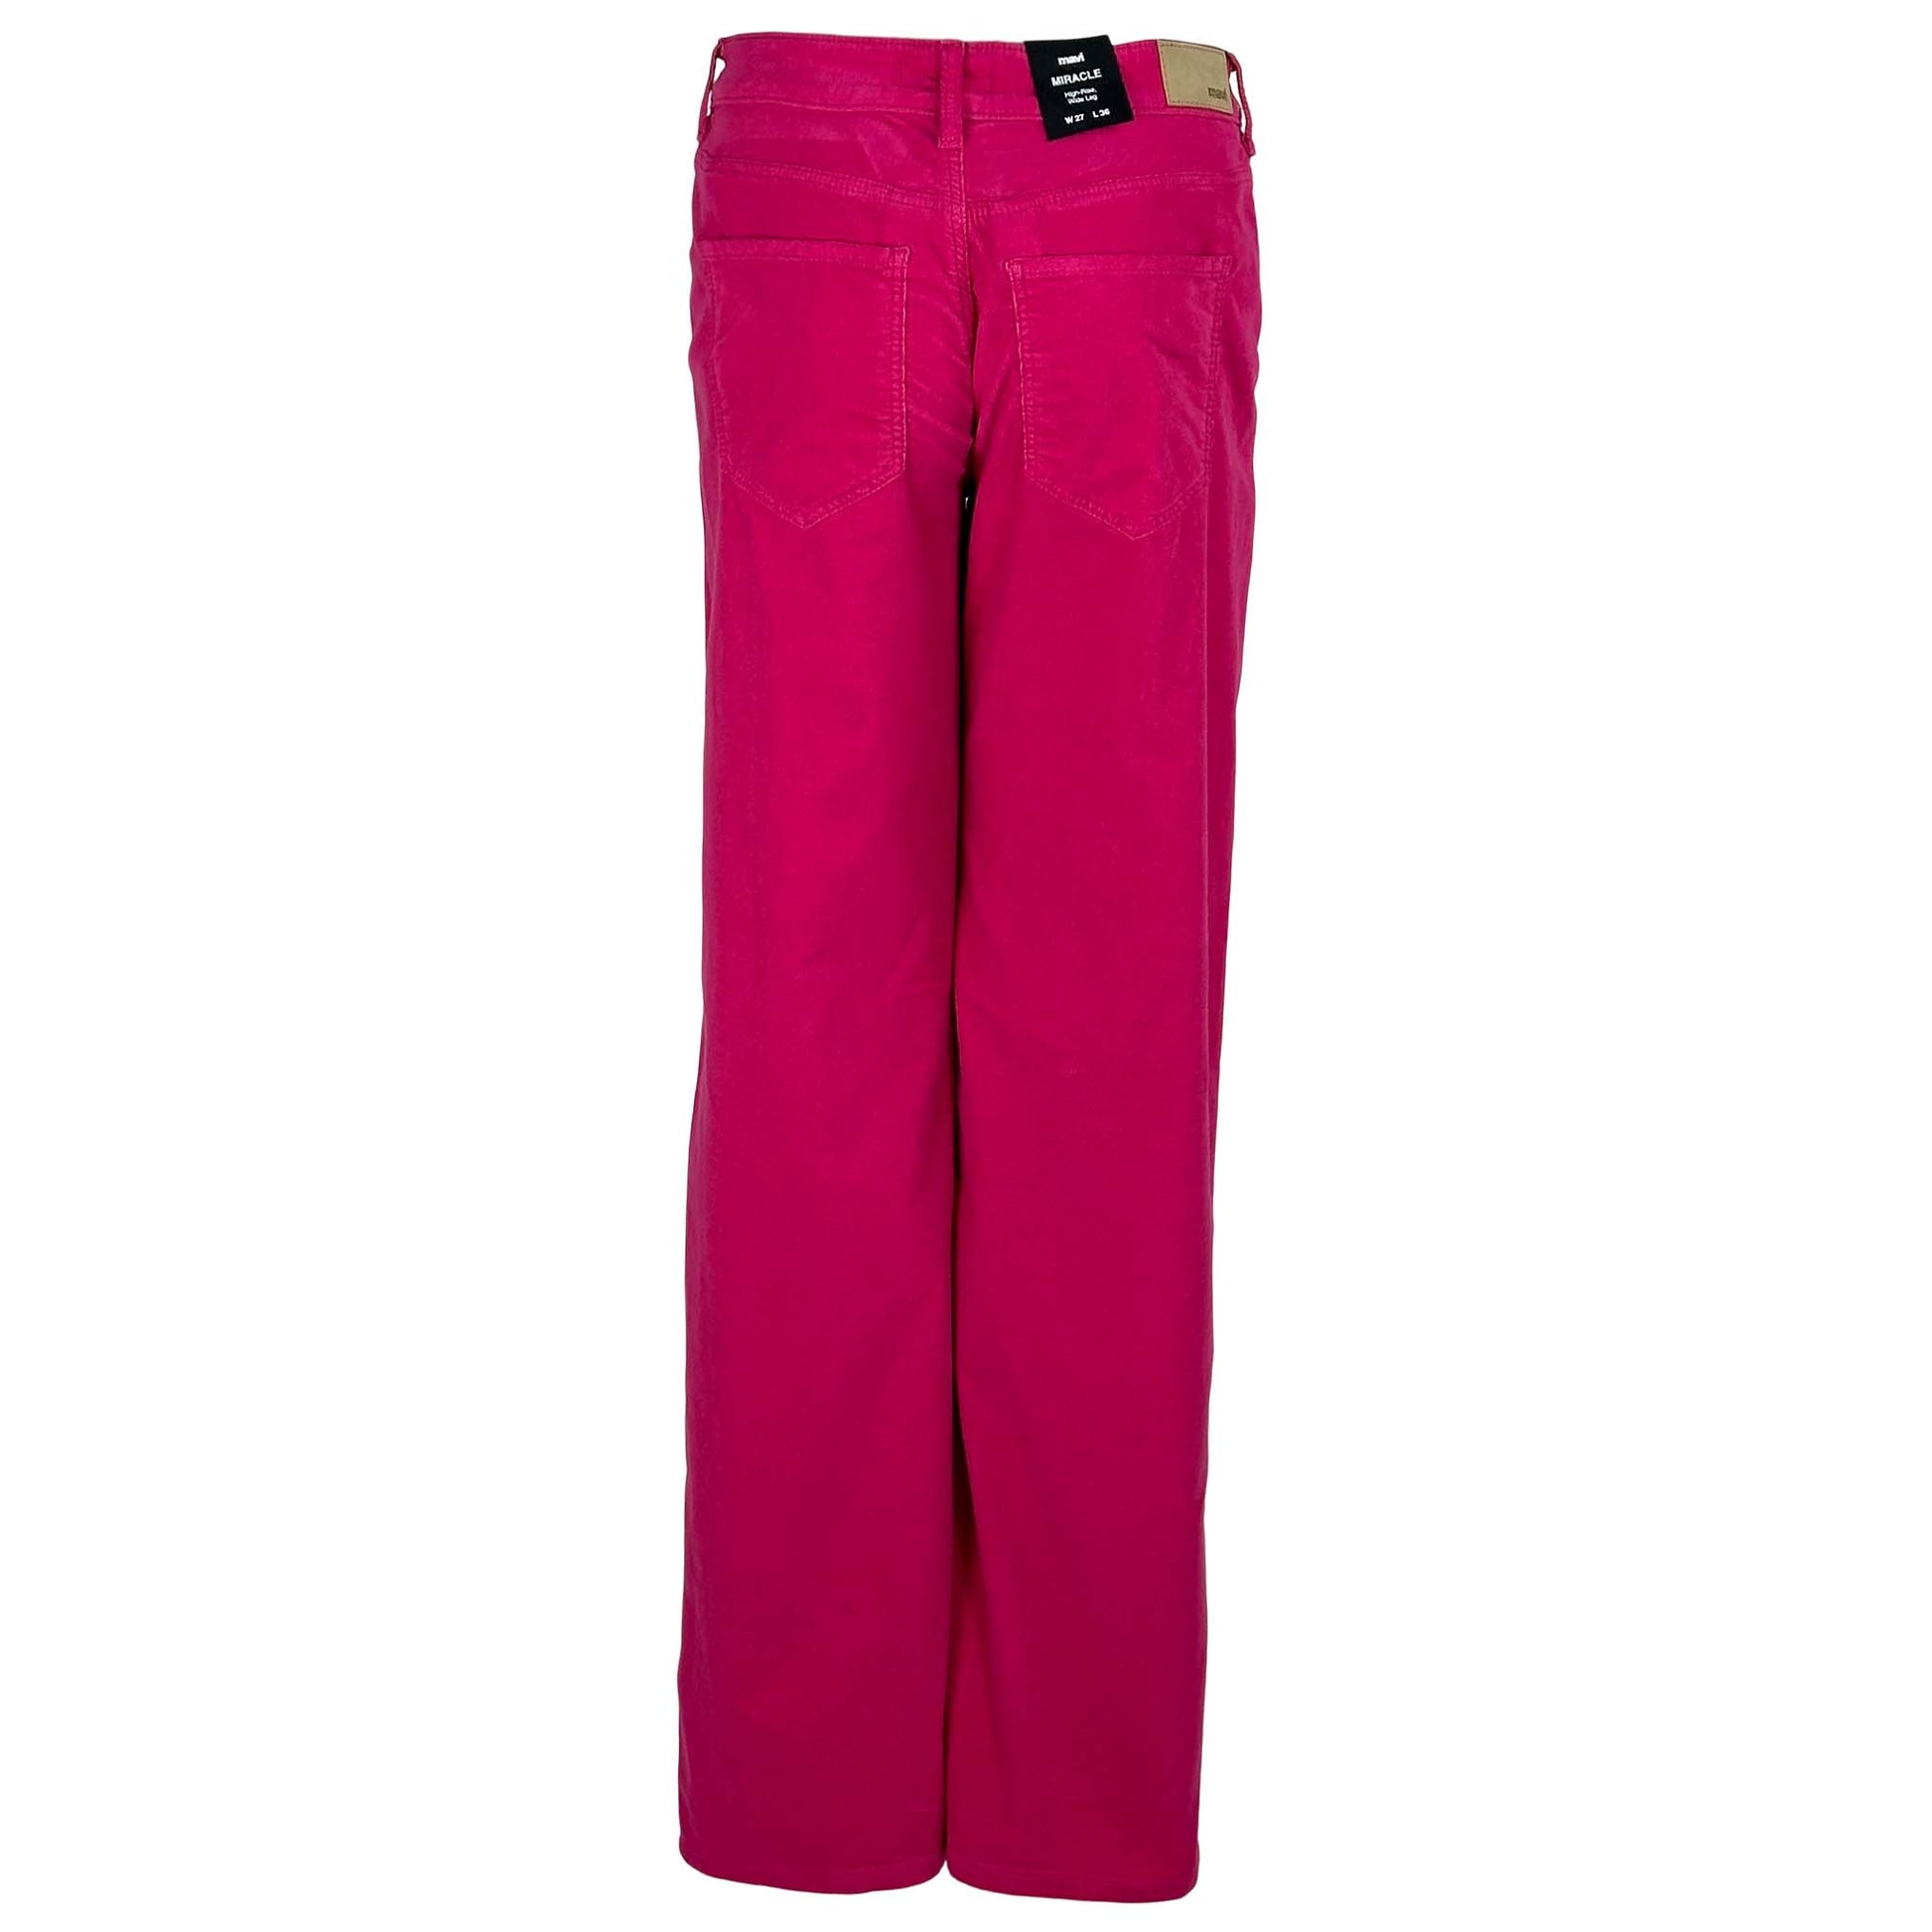 kleding lange vrouwen mavi jeans miracle shocking pink